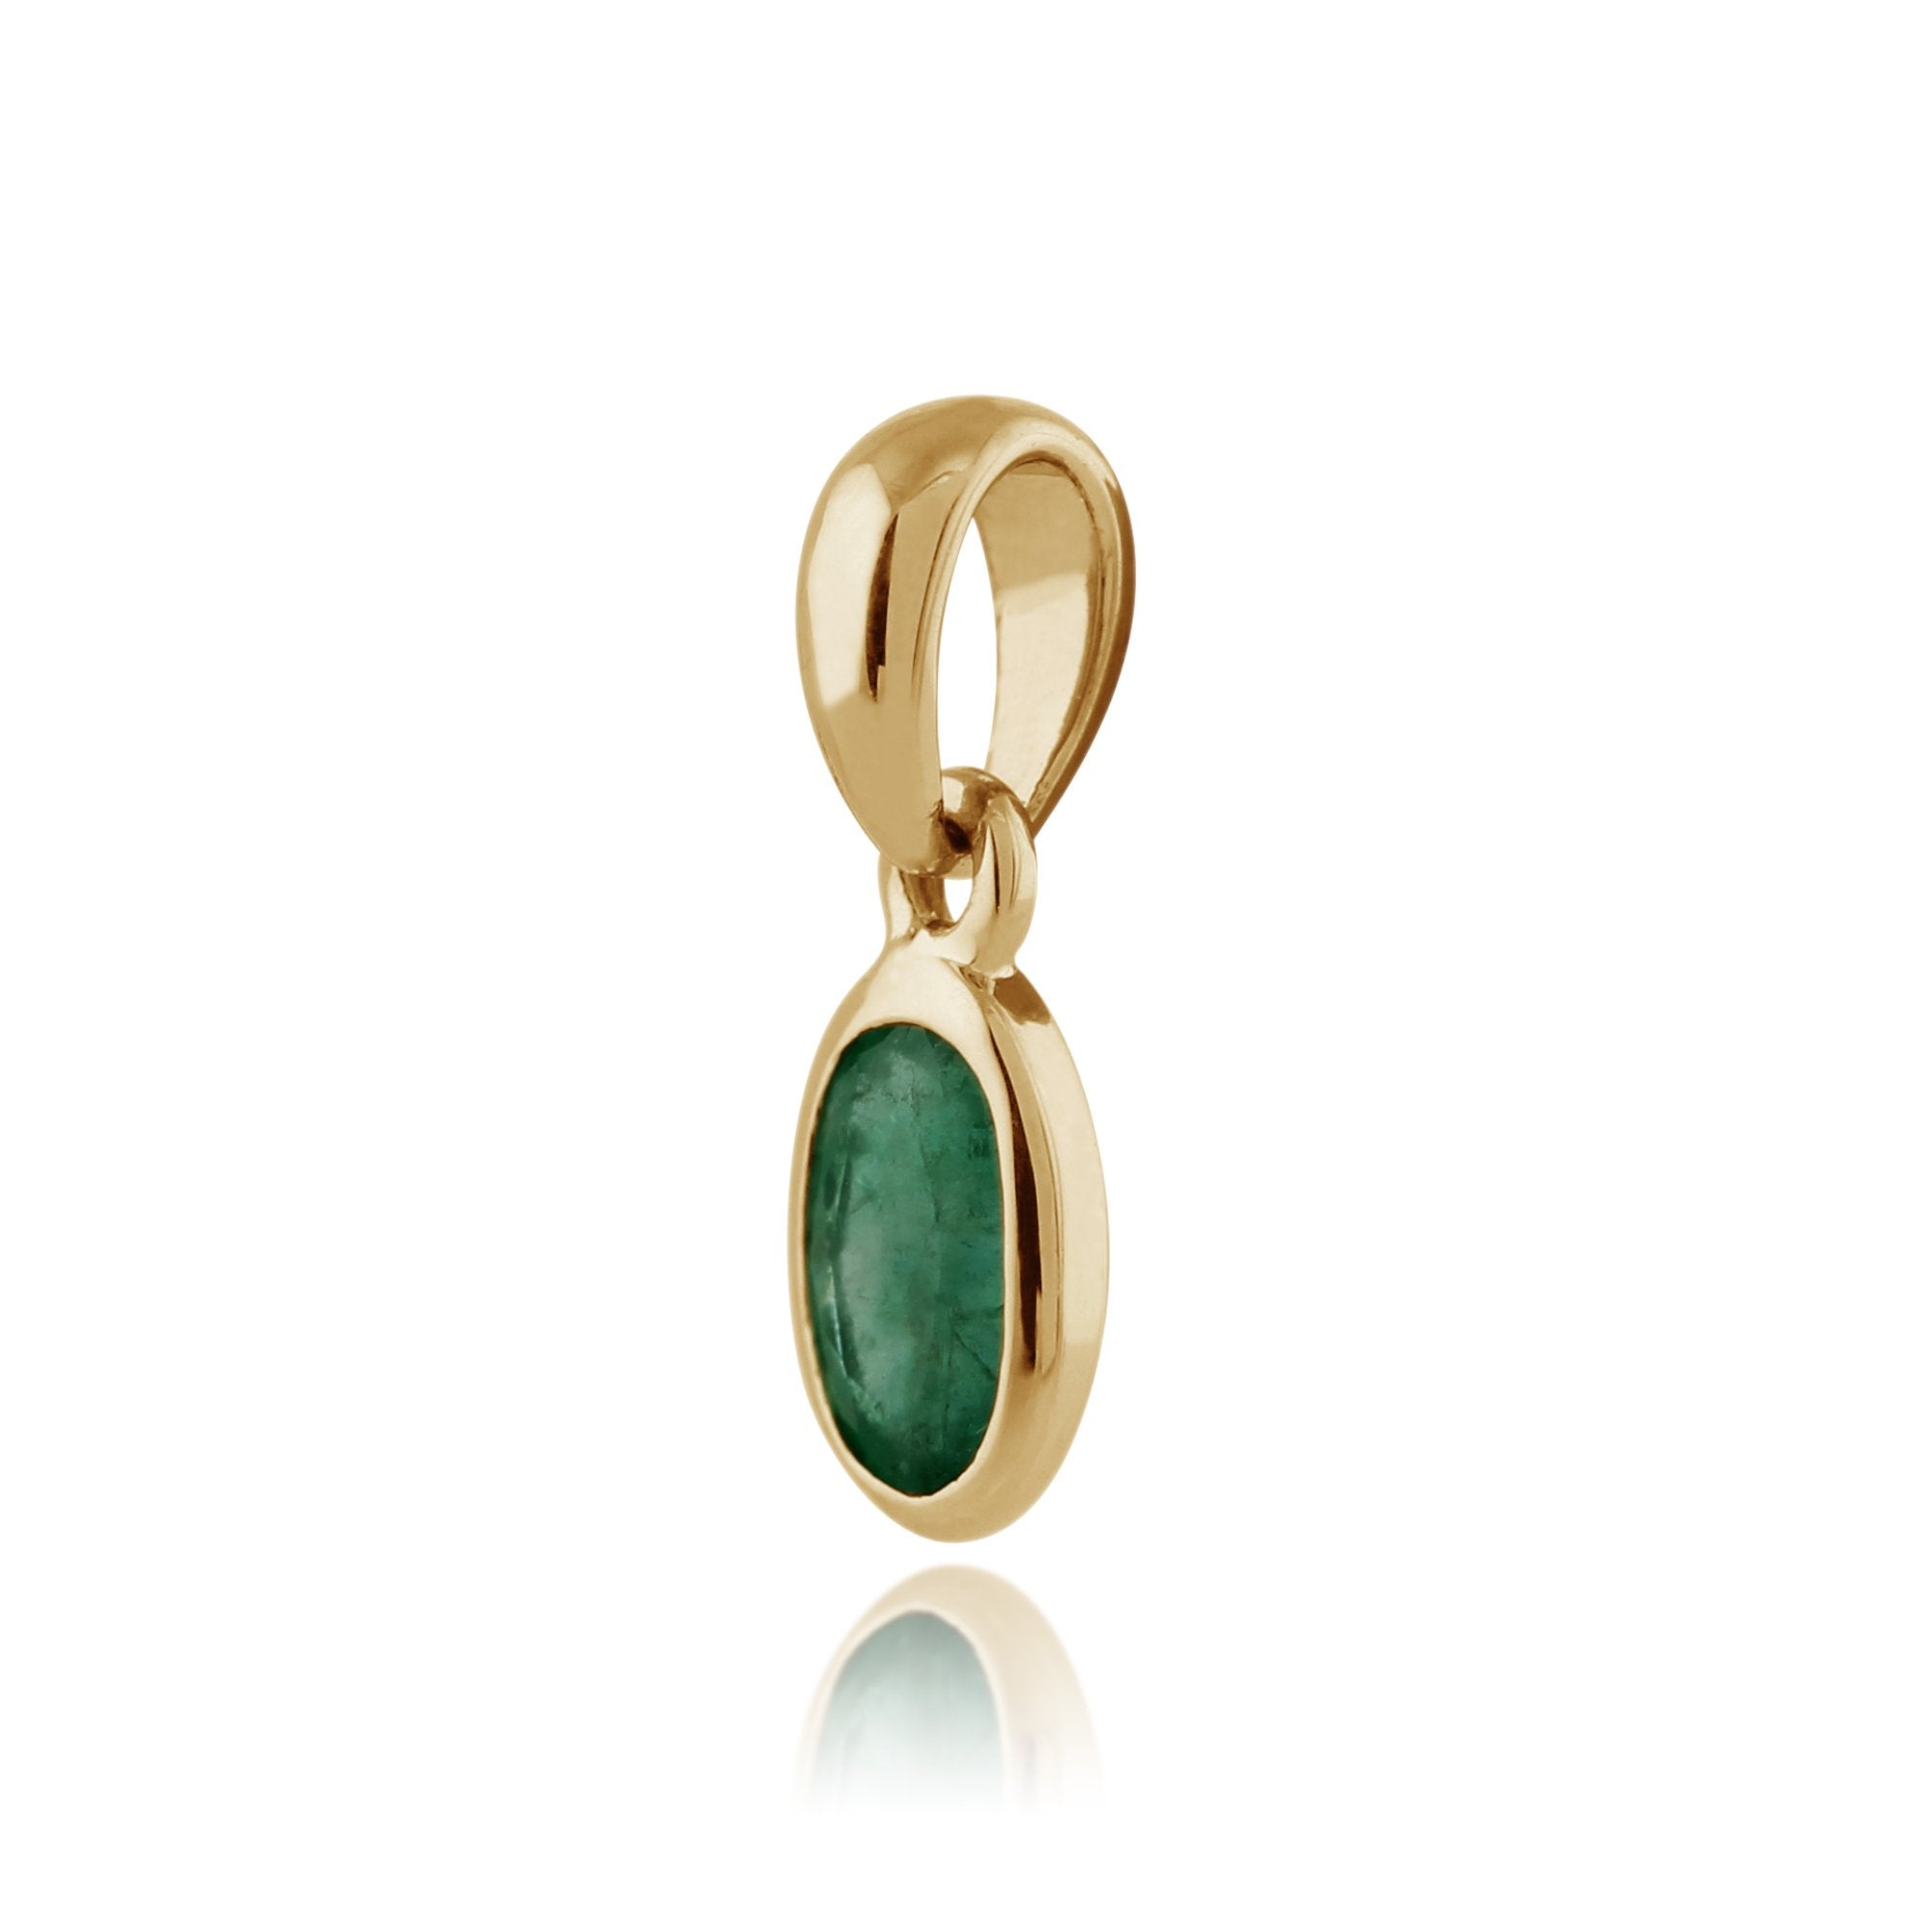 Gemondo Pendente con catena ovale con smeraldo da 0,25 ct con cornice in oro giallo da 9 ct su catena da 45 cm